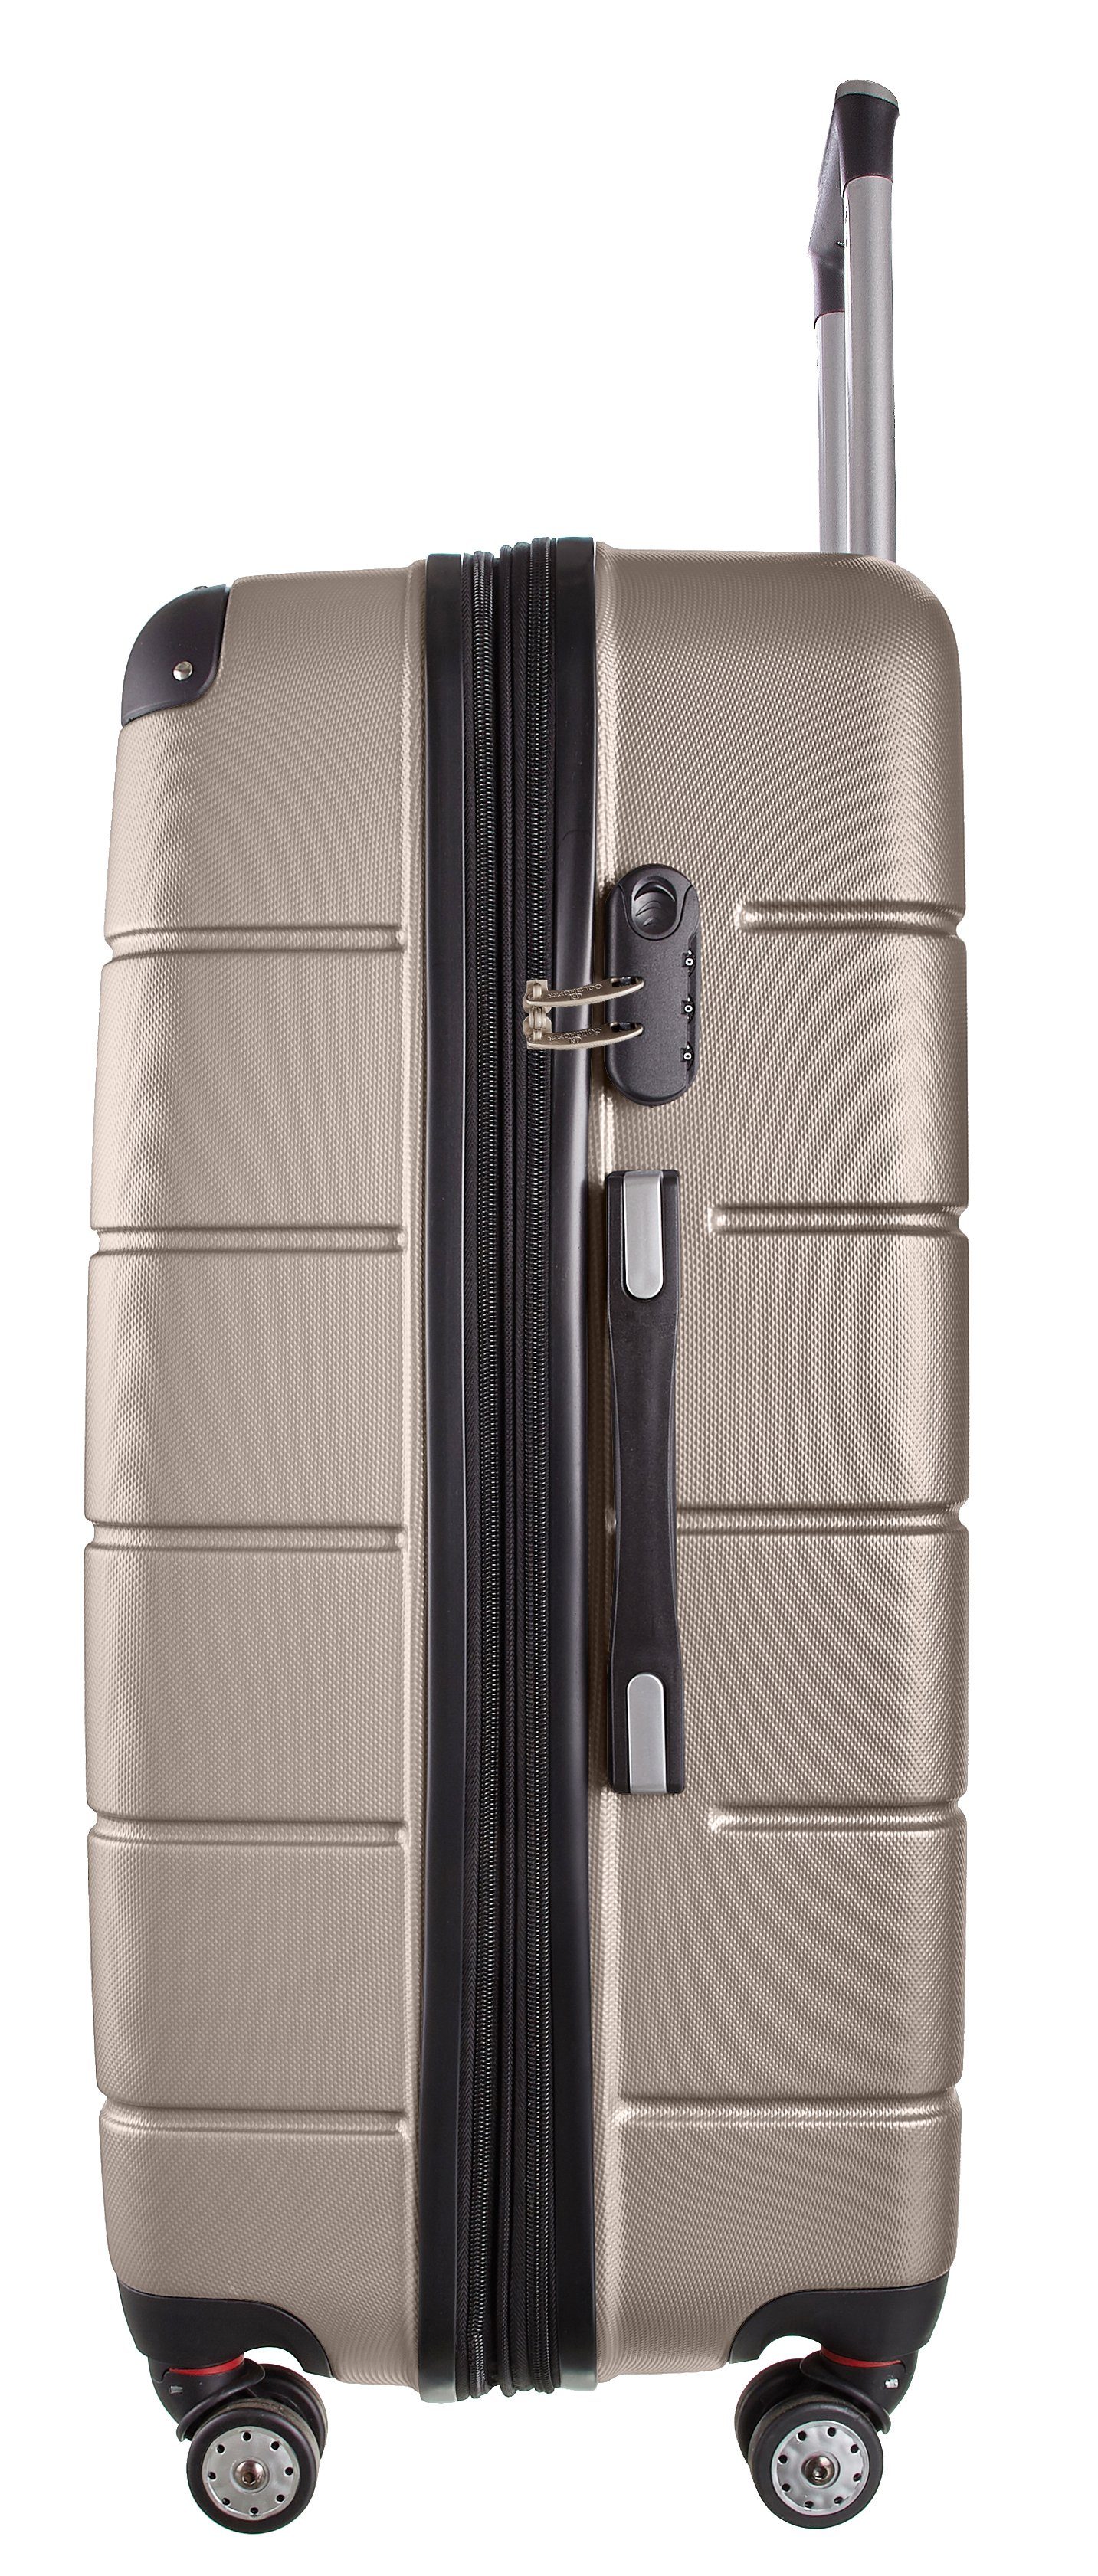 Farben 3 Goldhofer mit Champagner - Material verschiedene Außen Größen & V1 3 Modelle Leichtlaufrollen, TLG), ABS 360° Kofferset in Wasserabweisend (Set,